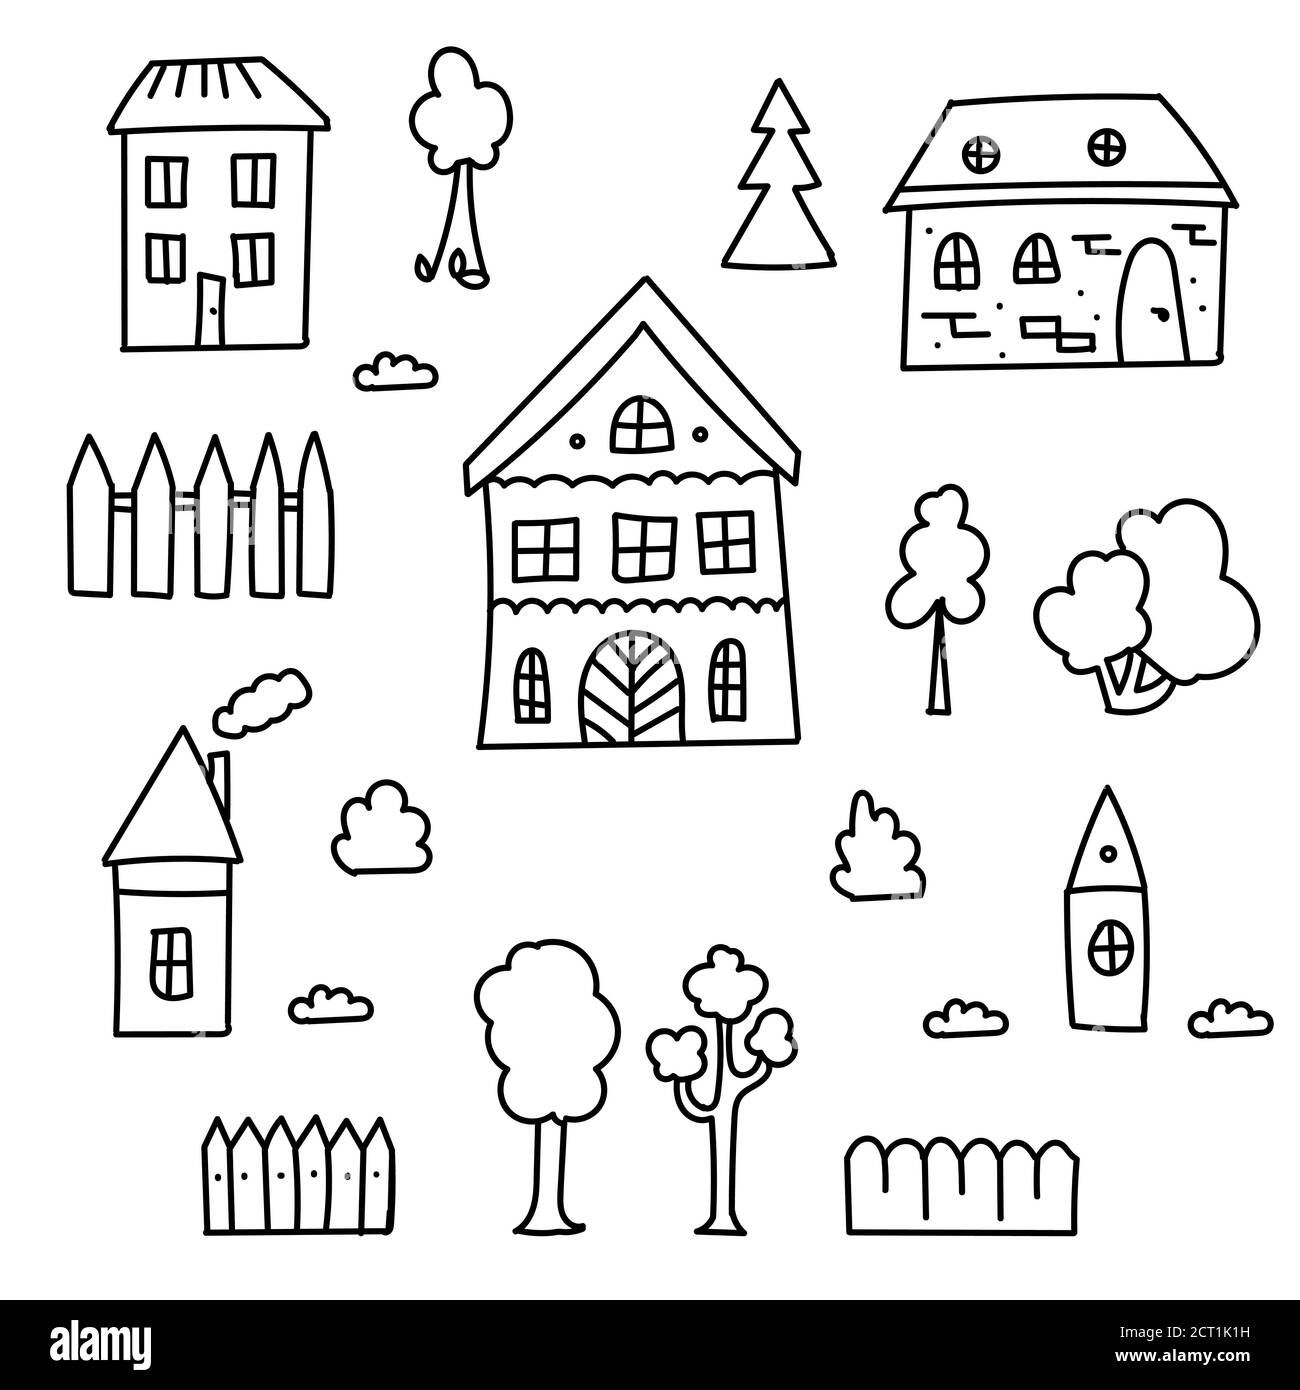 Handgezeichneter Satz von Doodle Häuser, Bäume und Zäune. Dünne schwarze Linie. Verschiedene Fenster, Türen und Dächer. Vektorgrafik isoliert auf Weiß Stock Vektor